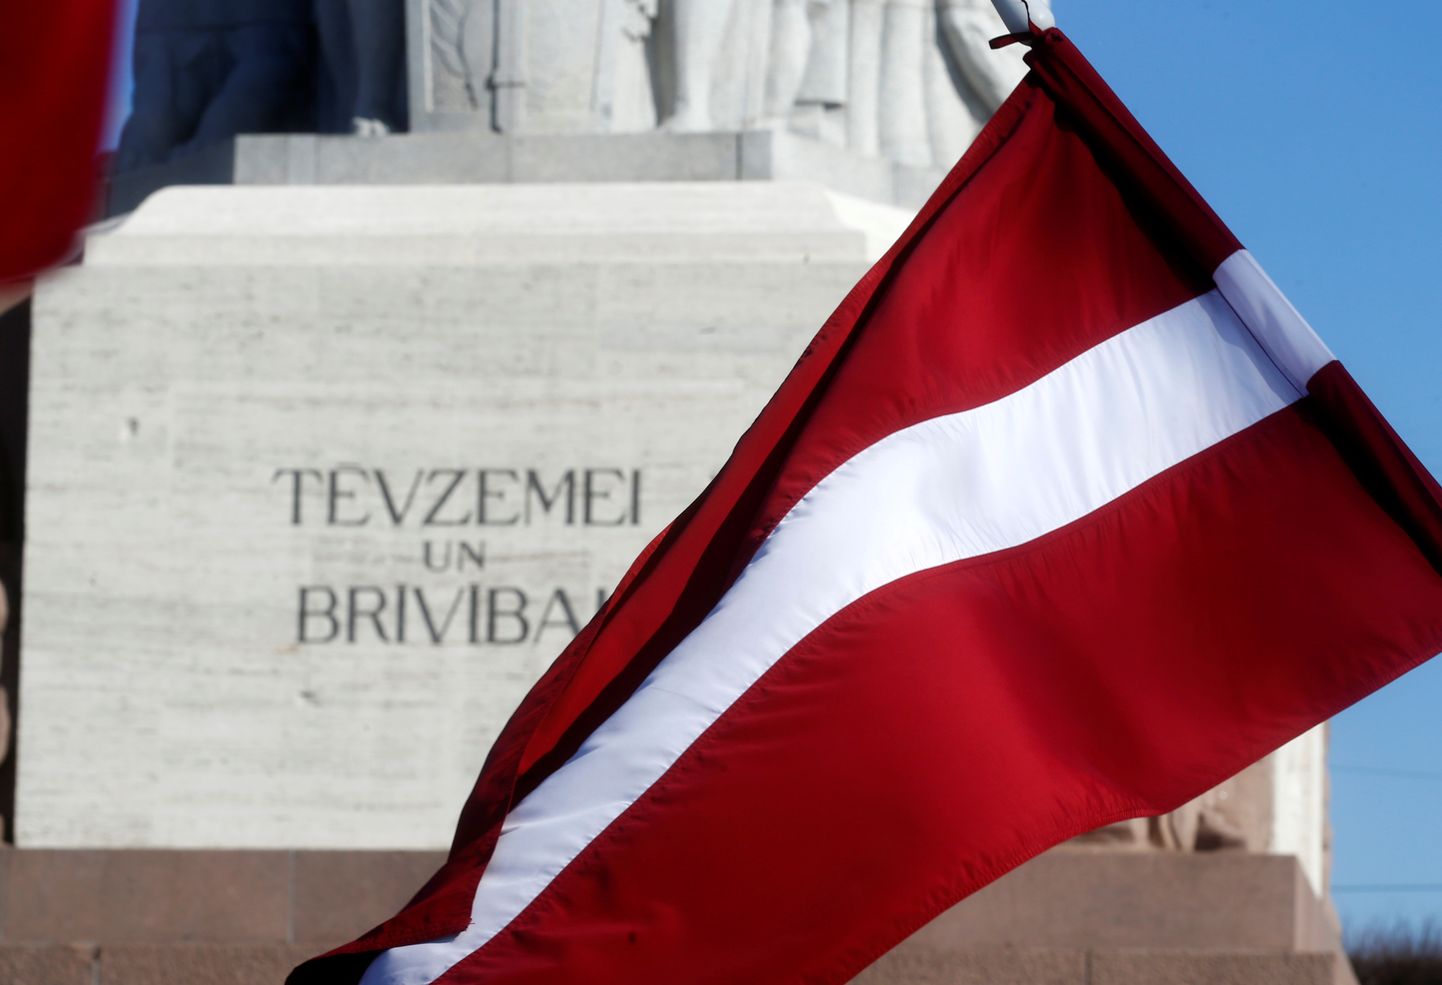 Lätis võivad kõnelused valitsuskoalitsiooni moodustamiseks lõppeda viie erakonna võimuliidu moodustamisega.